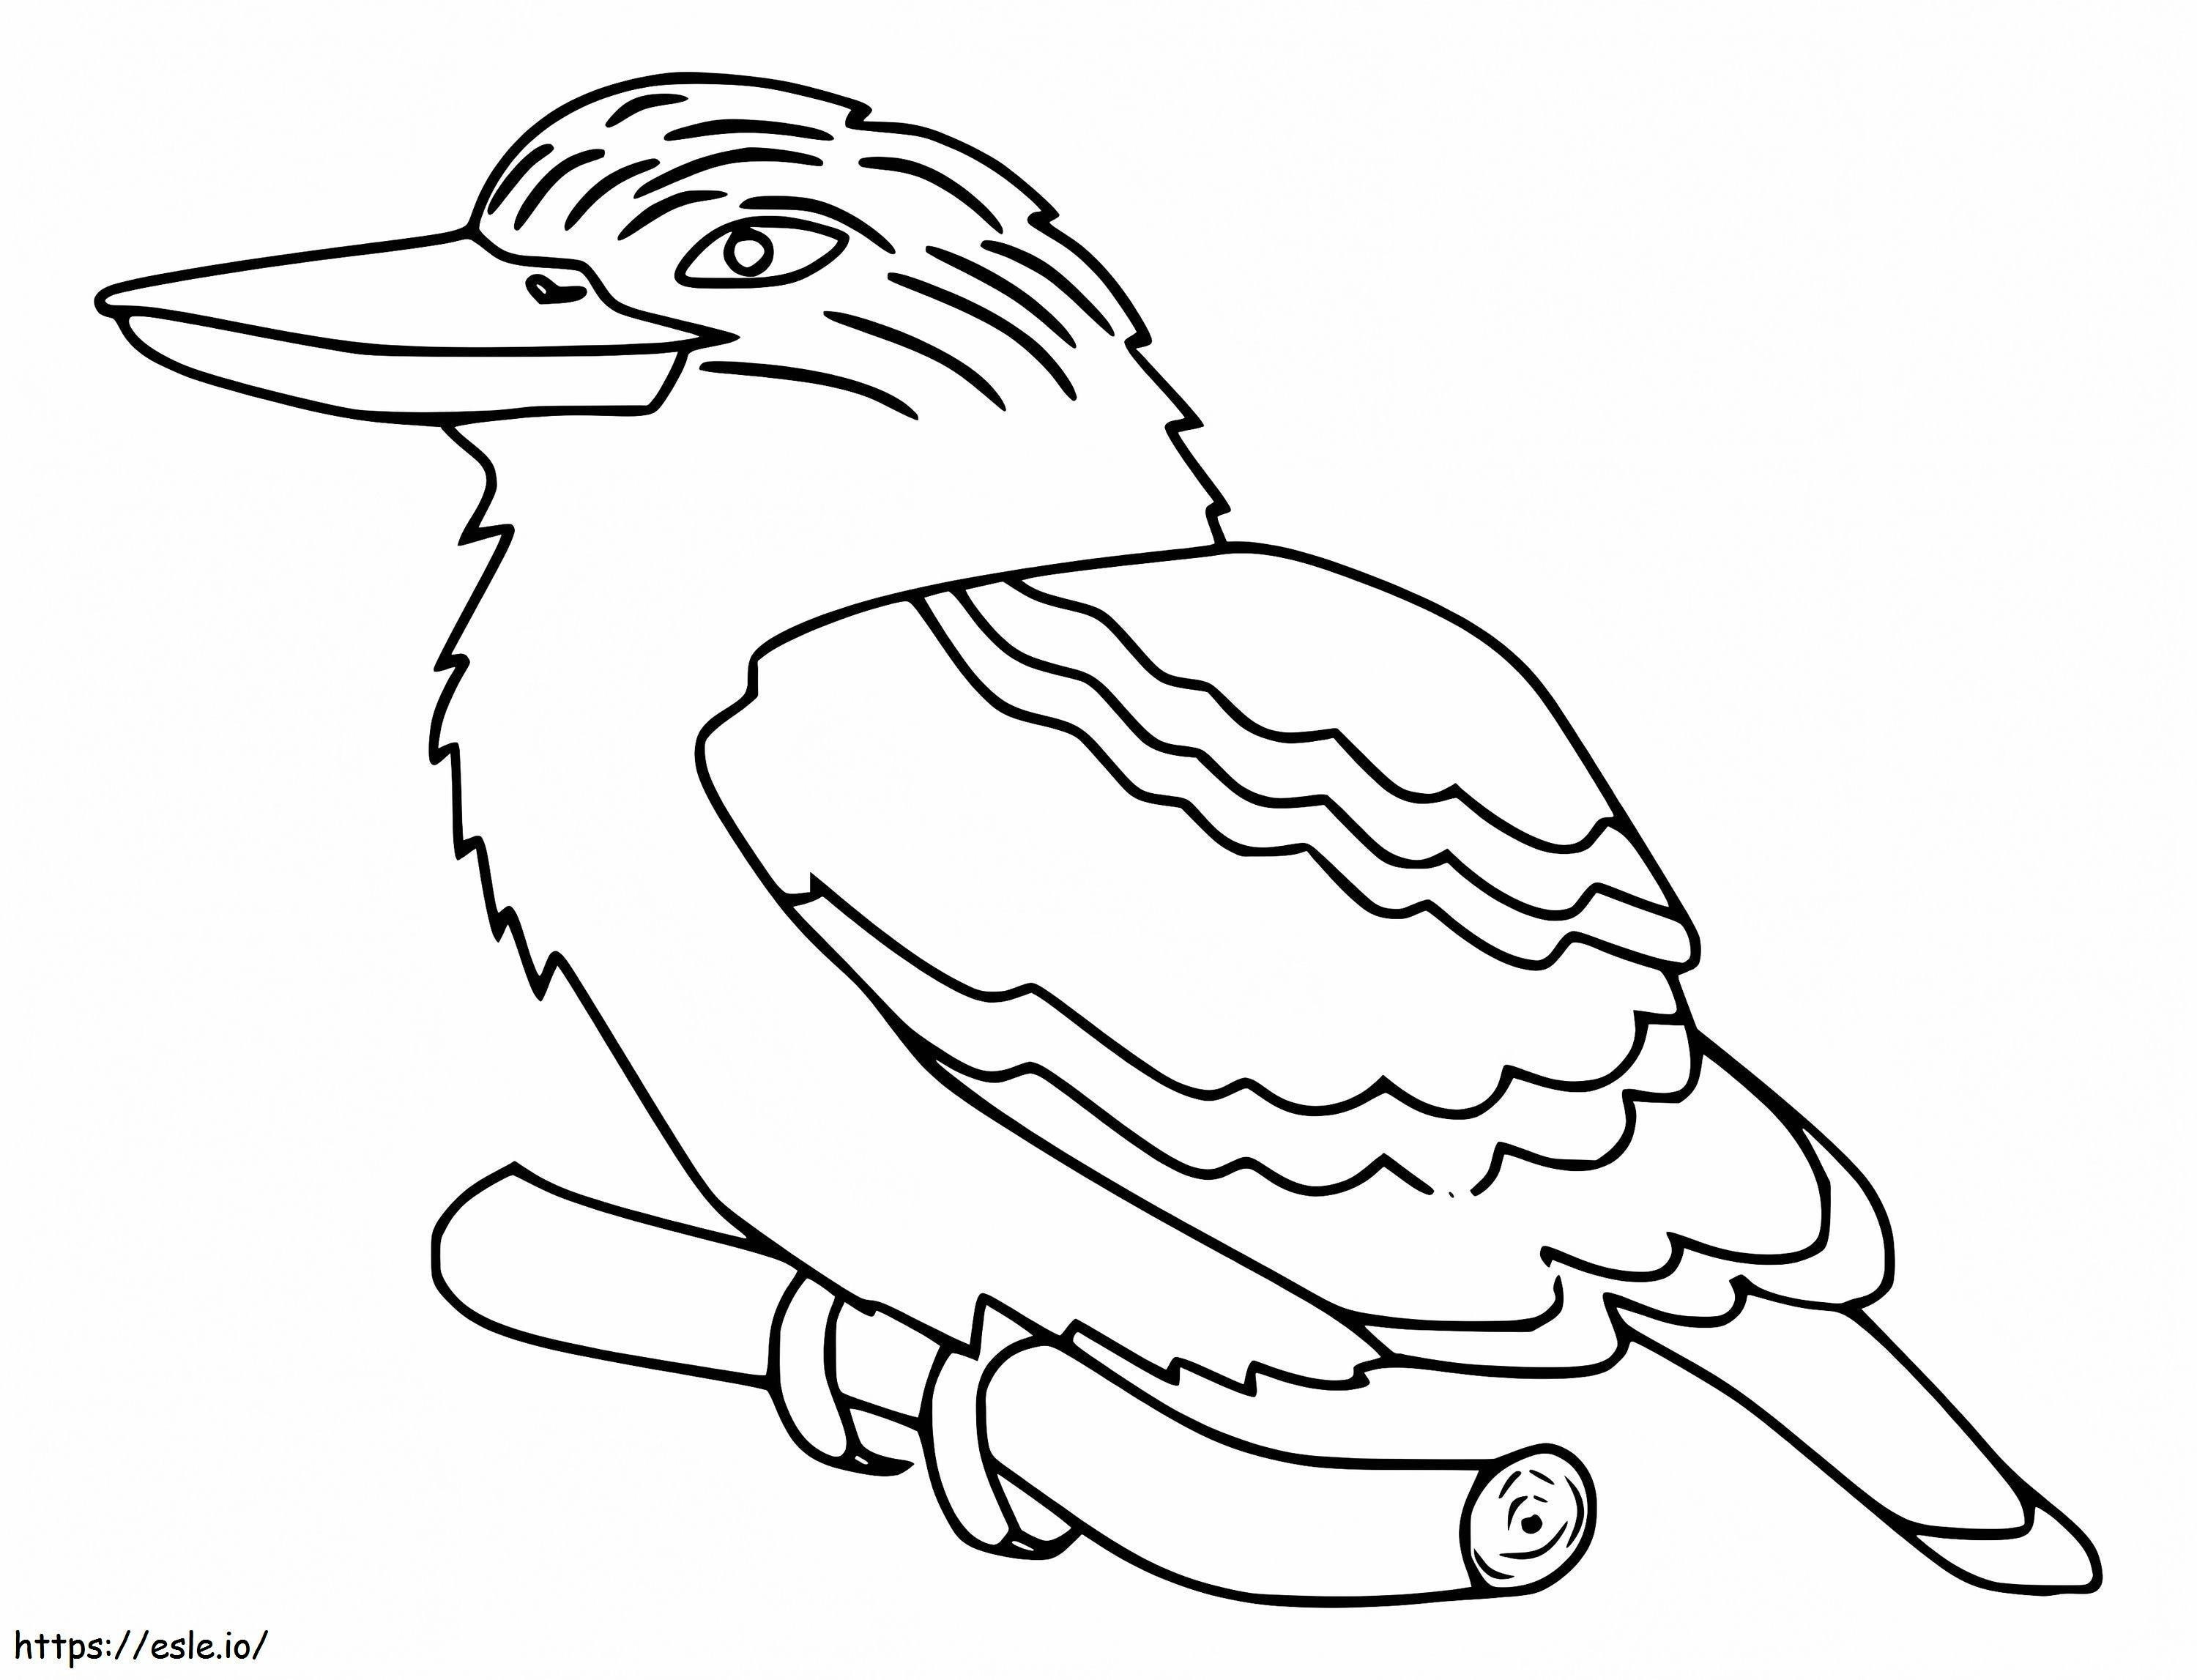 Ücretsiz Yazdırılabilir Kookaburra boyama